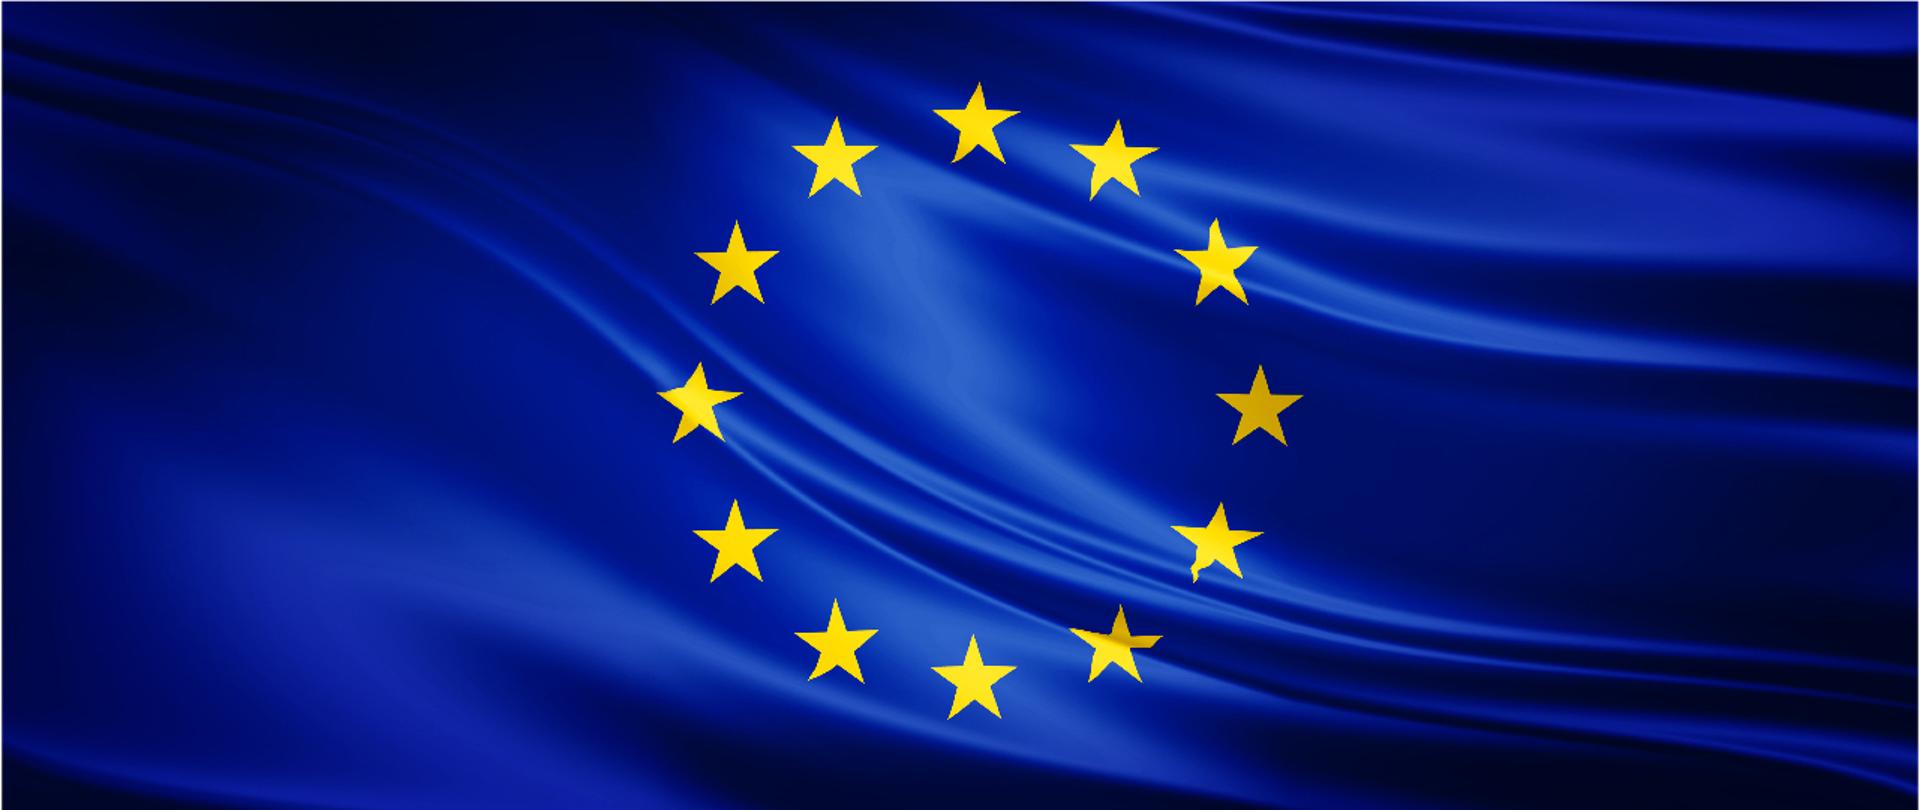 Baner: Dofinansowania EU